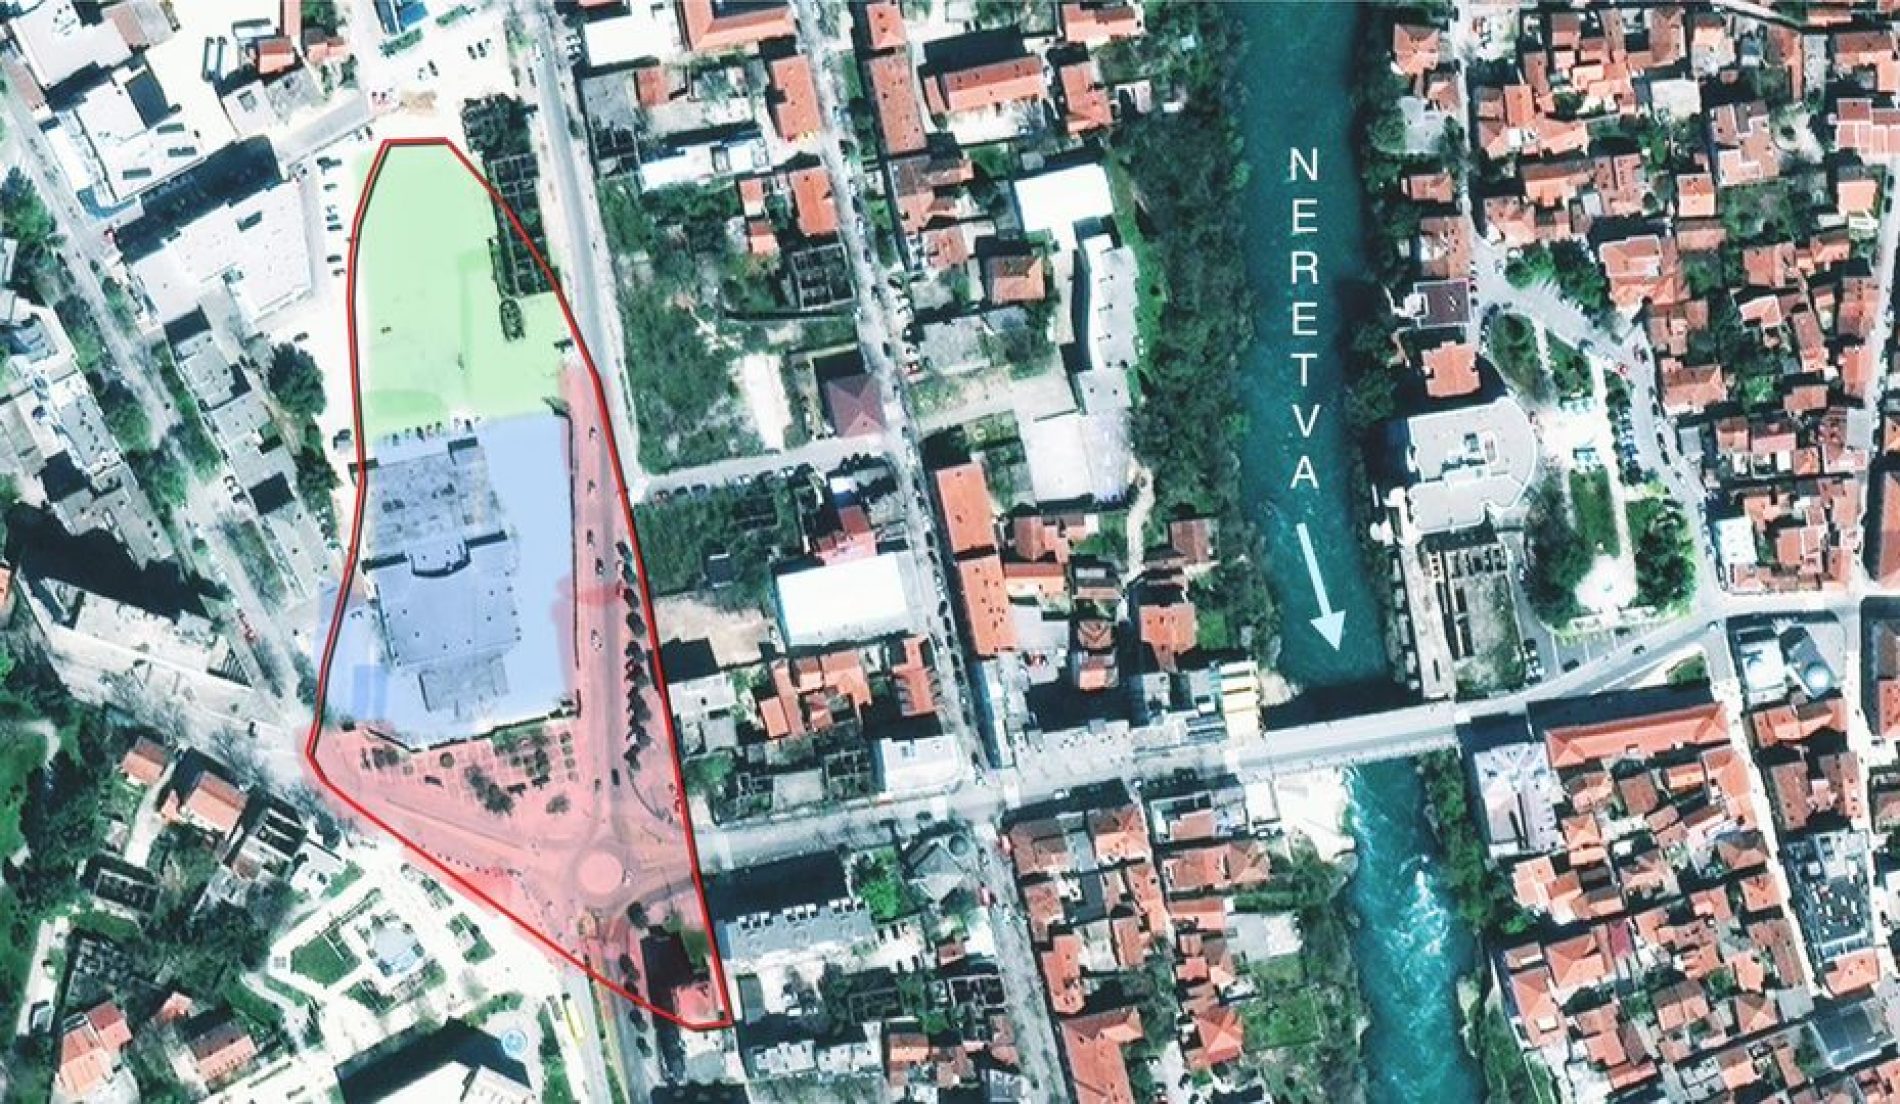 Lakišića harem, Mostar